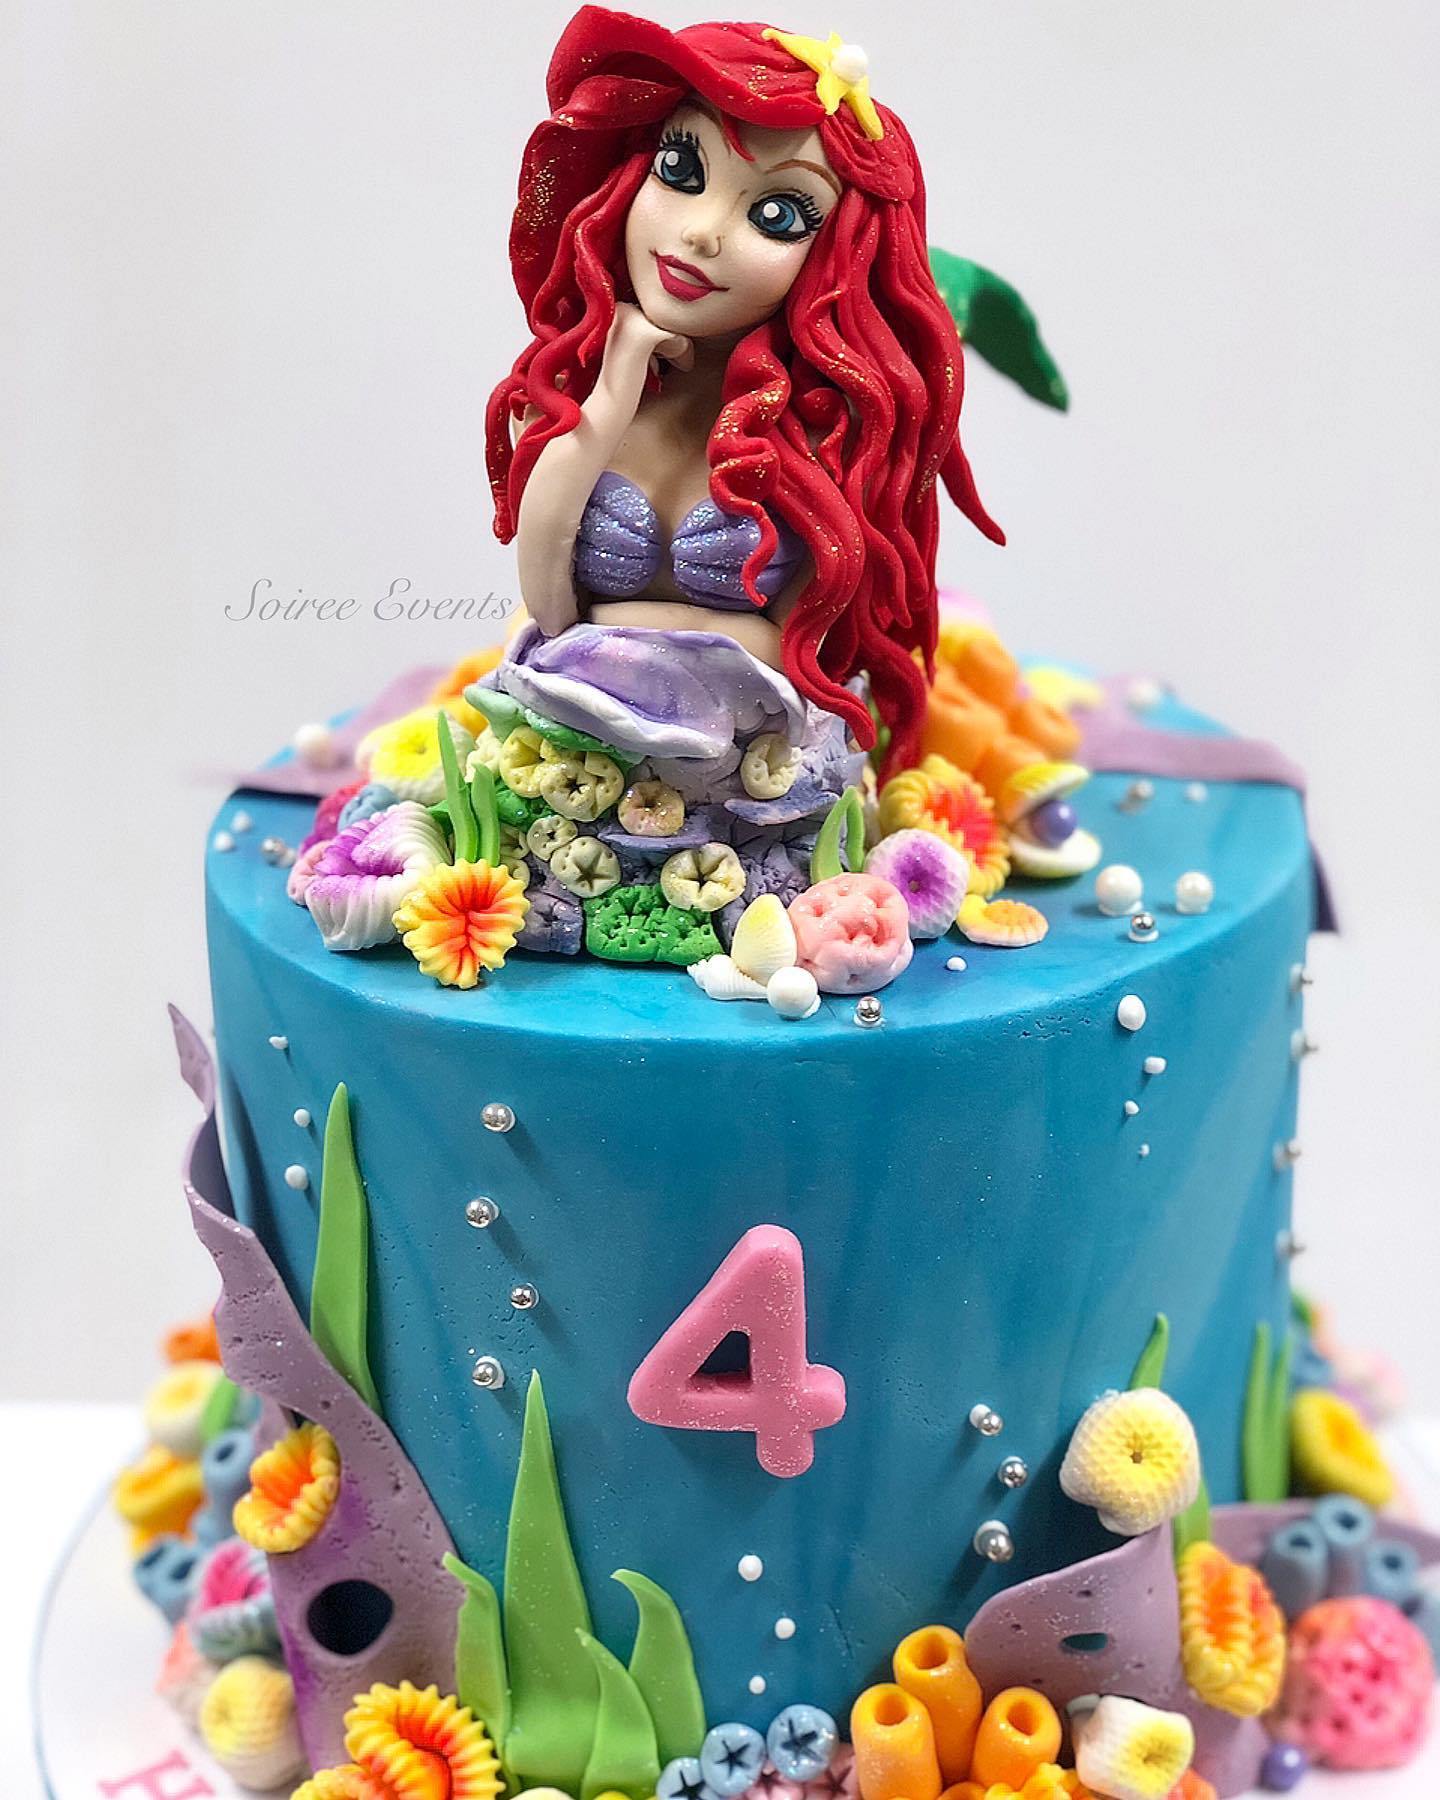 Bolos e Tortas - Bolo da Princesa Ariel 🎂 ______ #bolo #bolodecorados  #bolodefesta #flores #bolopastaamericana #cake #cakestagram #boloprincesa  #bologrande #bolosetortas #remigio #paraiba